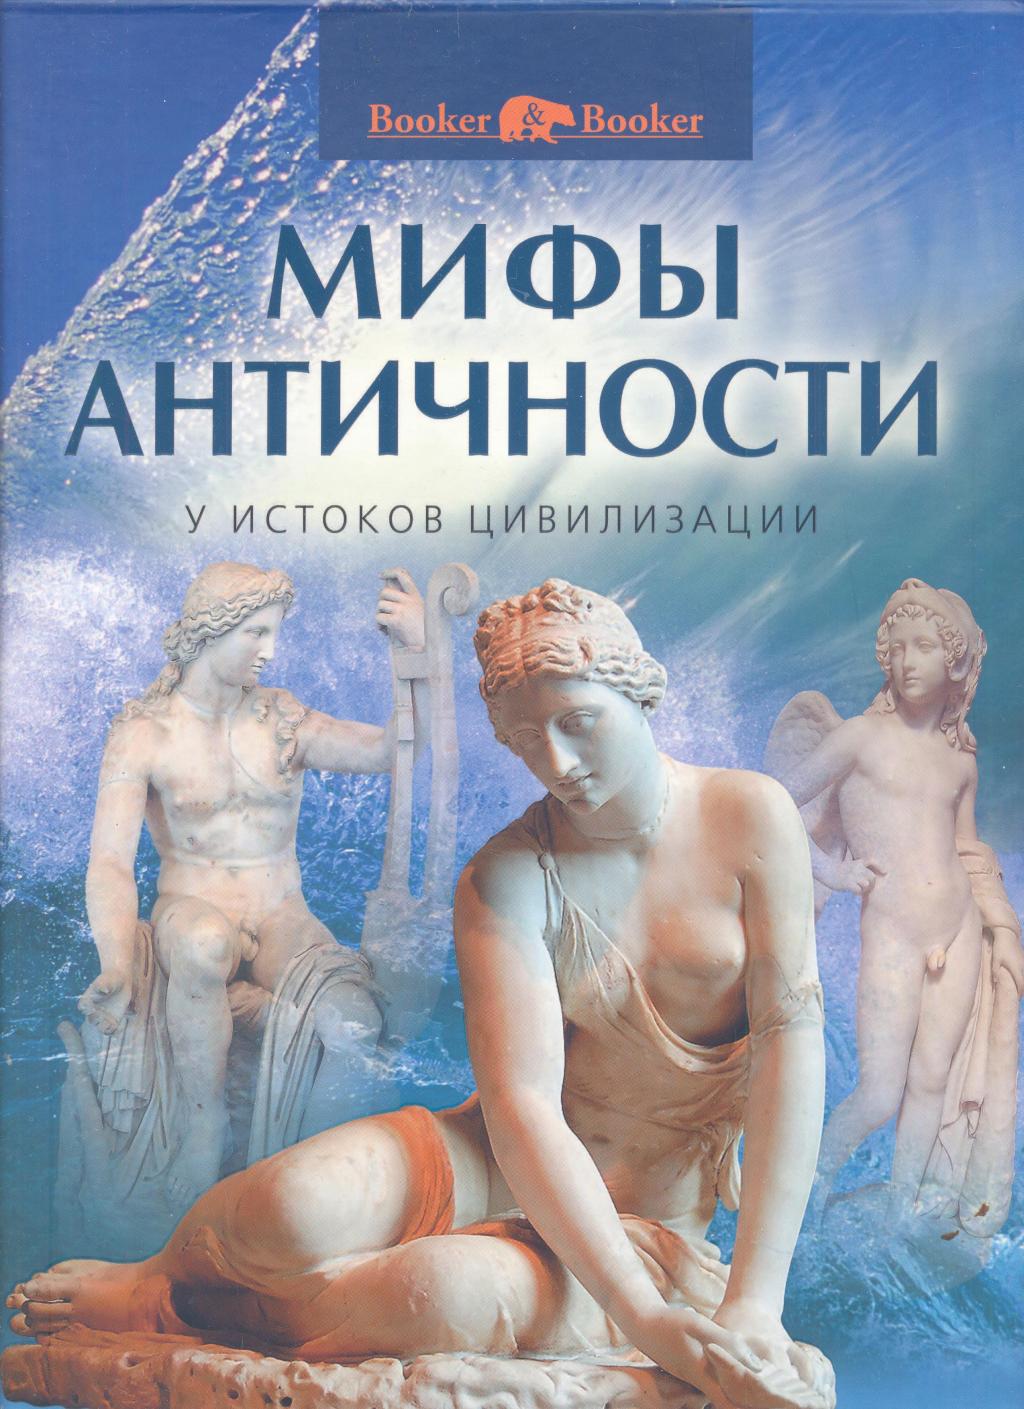 Мифы античности:у истоков цивилизации.Альбом в художественном футляре